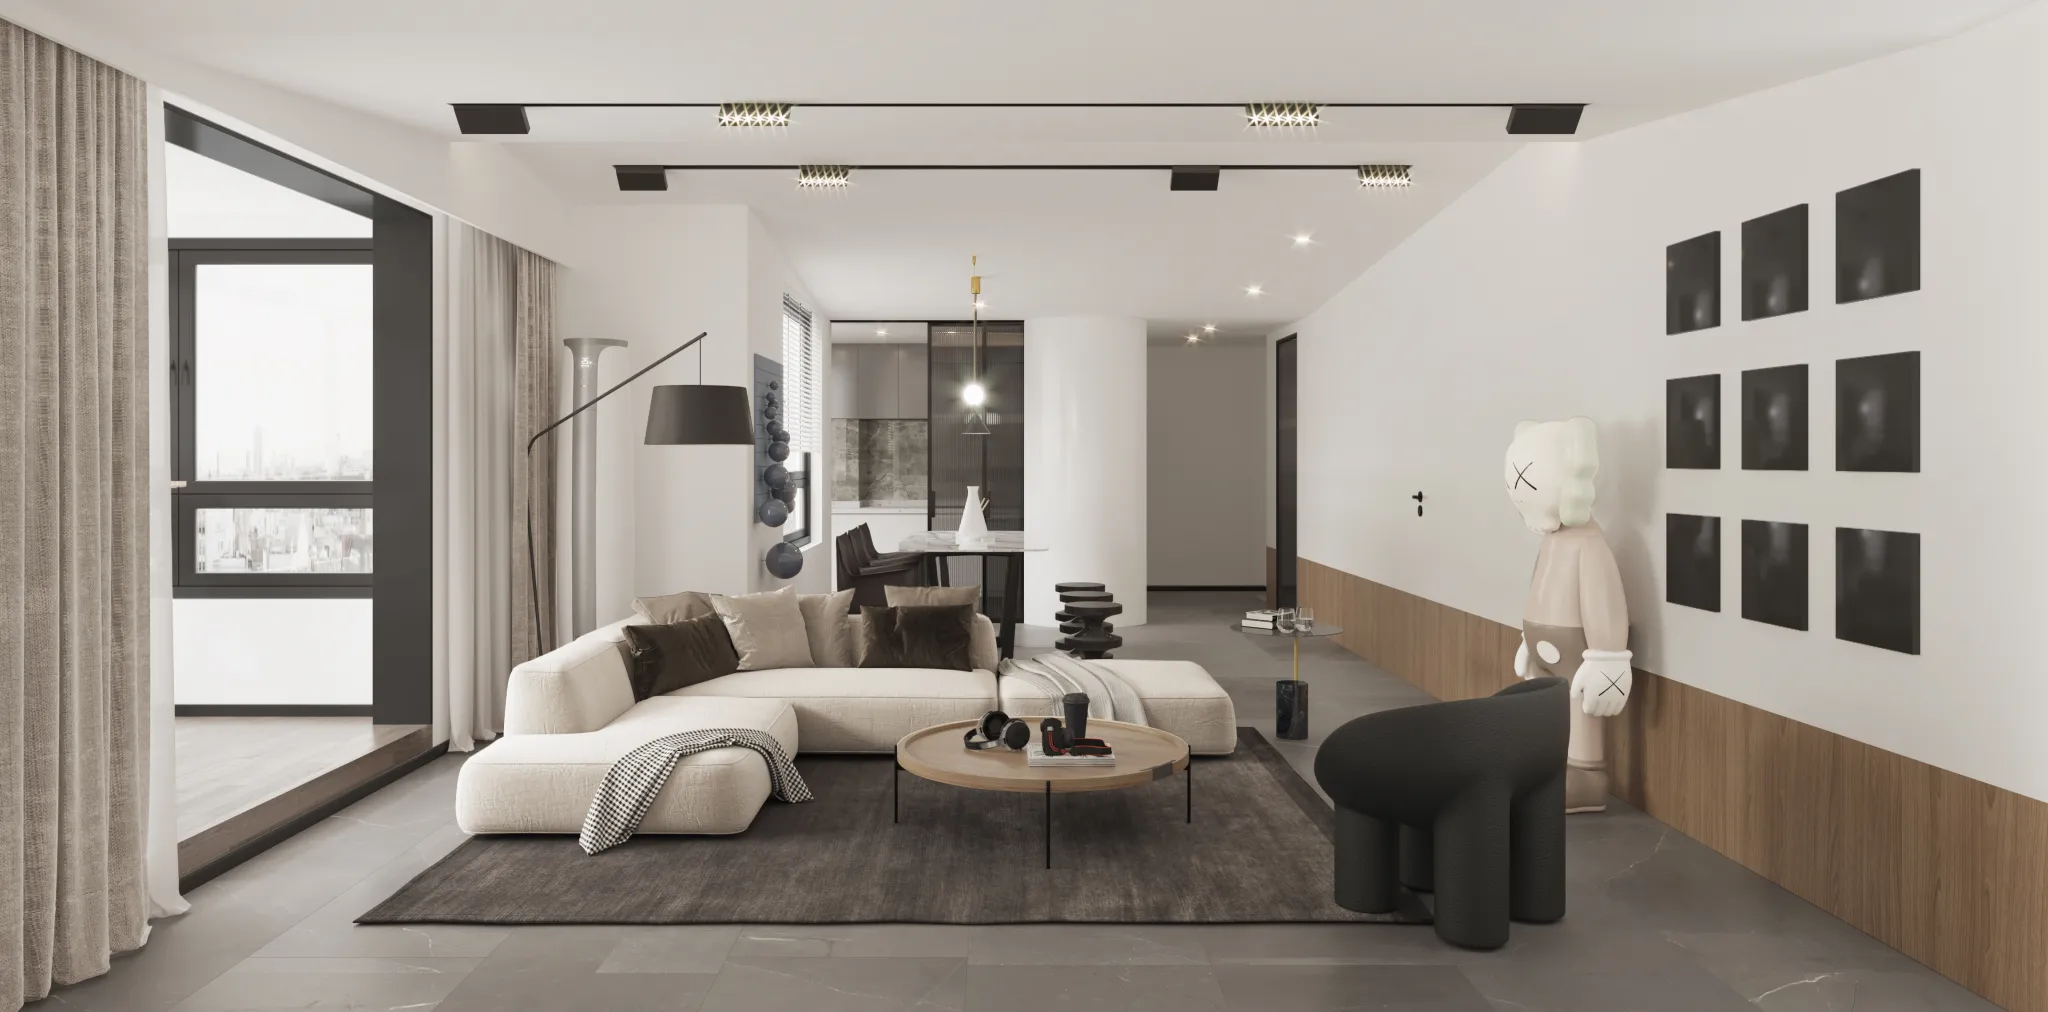 Corona Render Scene – Living Room 3D Models – 0027